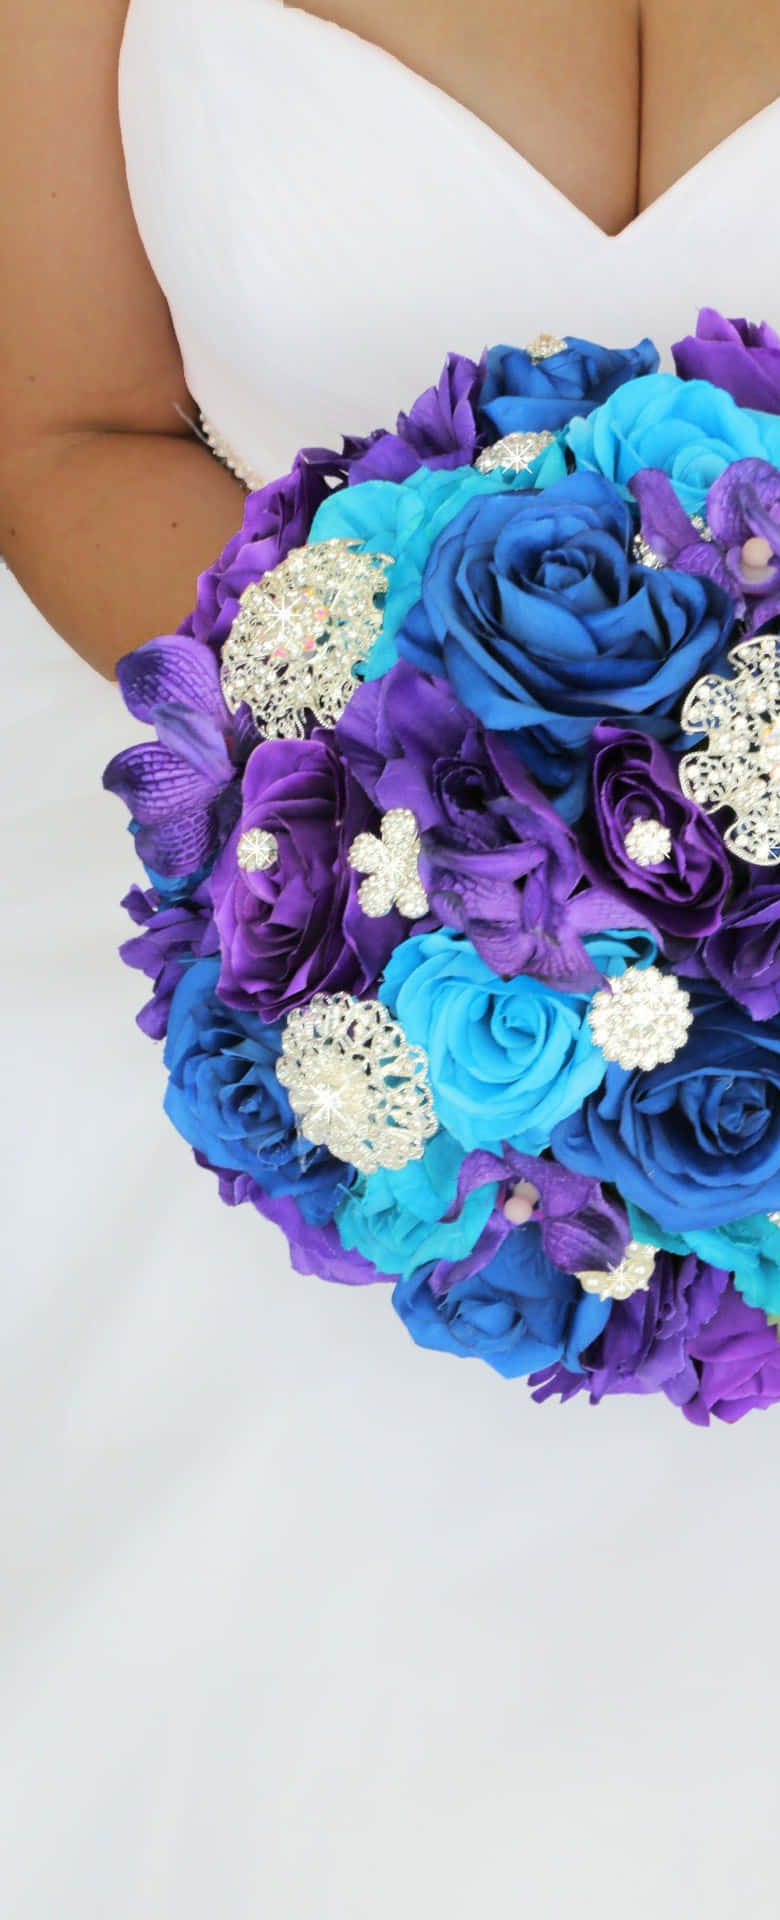 Immaginedi Un Bouquet Nuziale Di Rose Viola E Blu